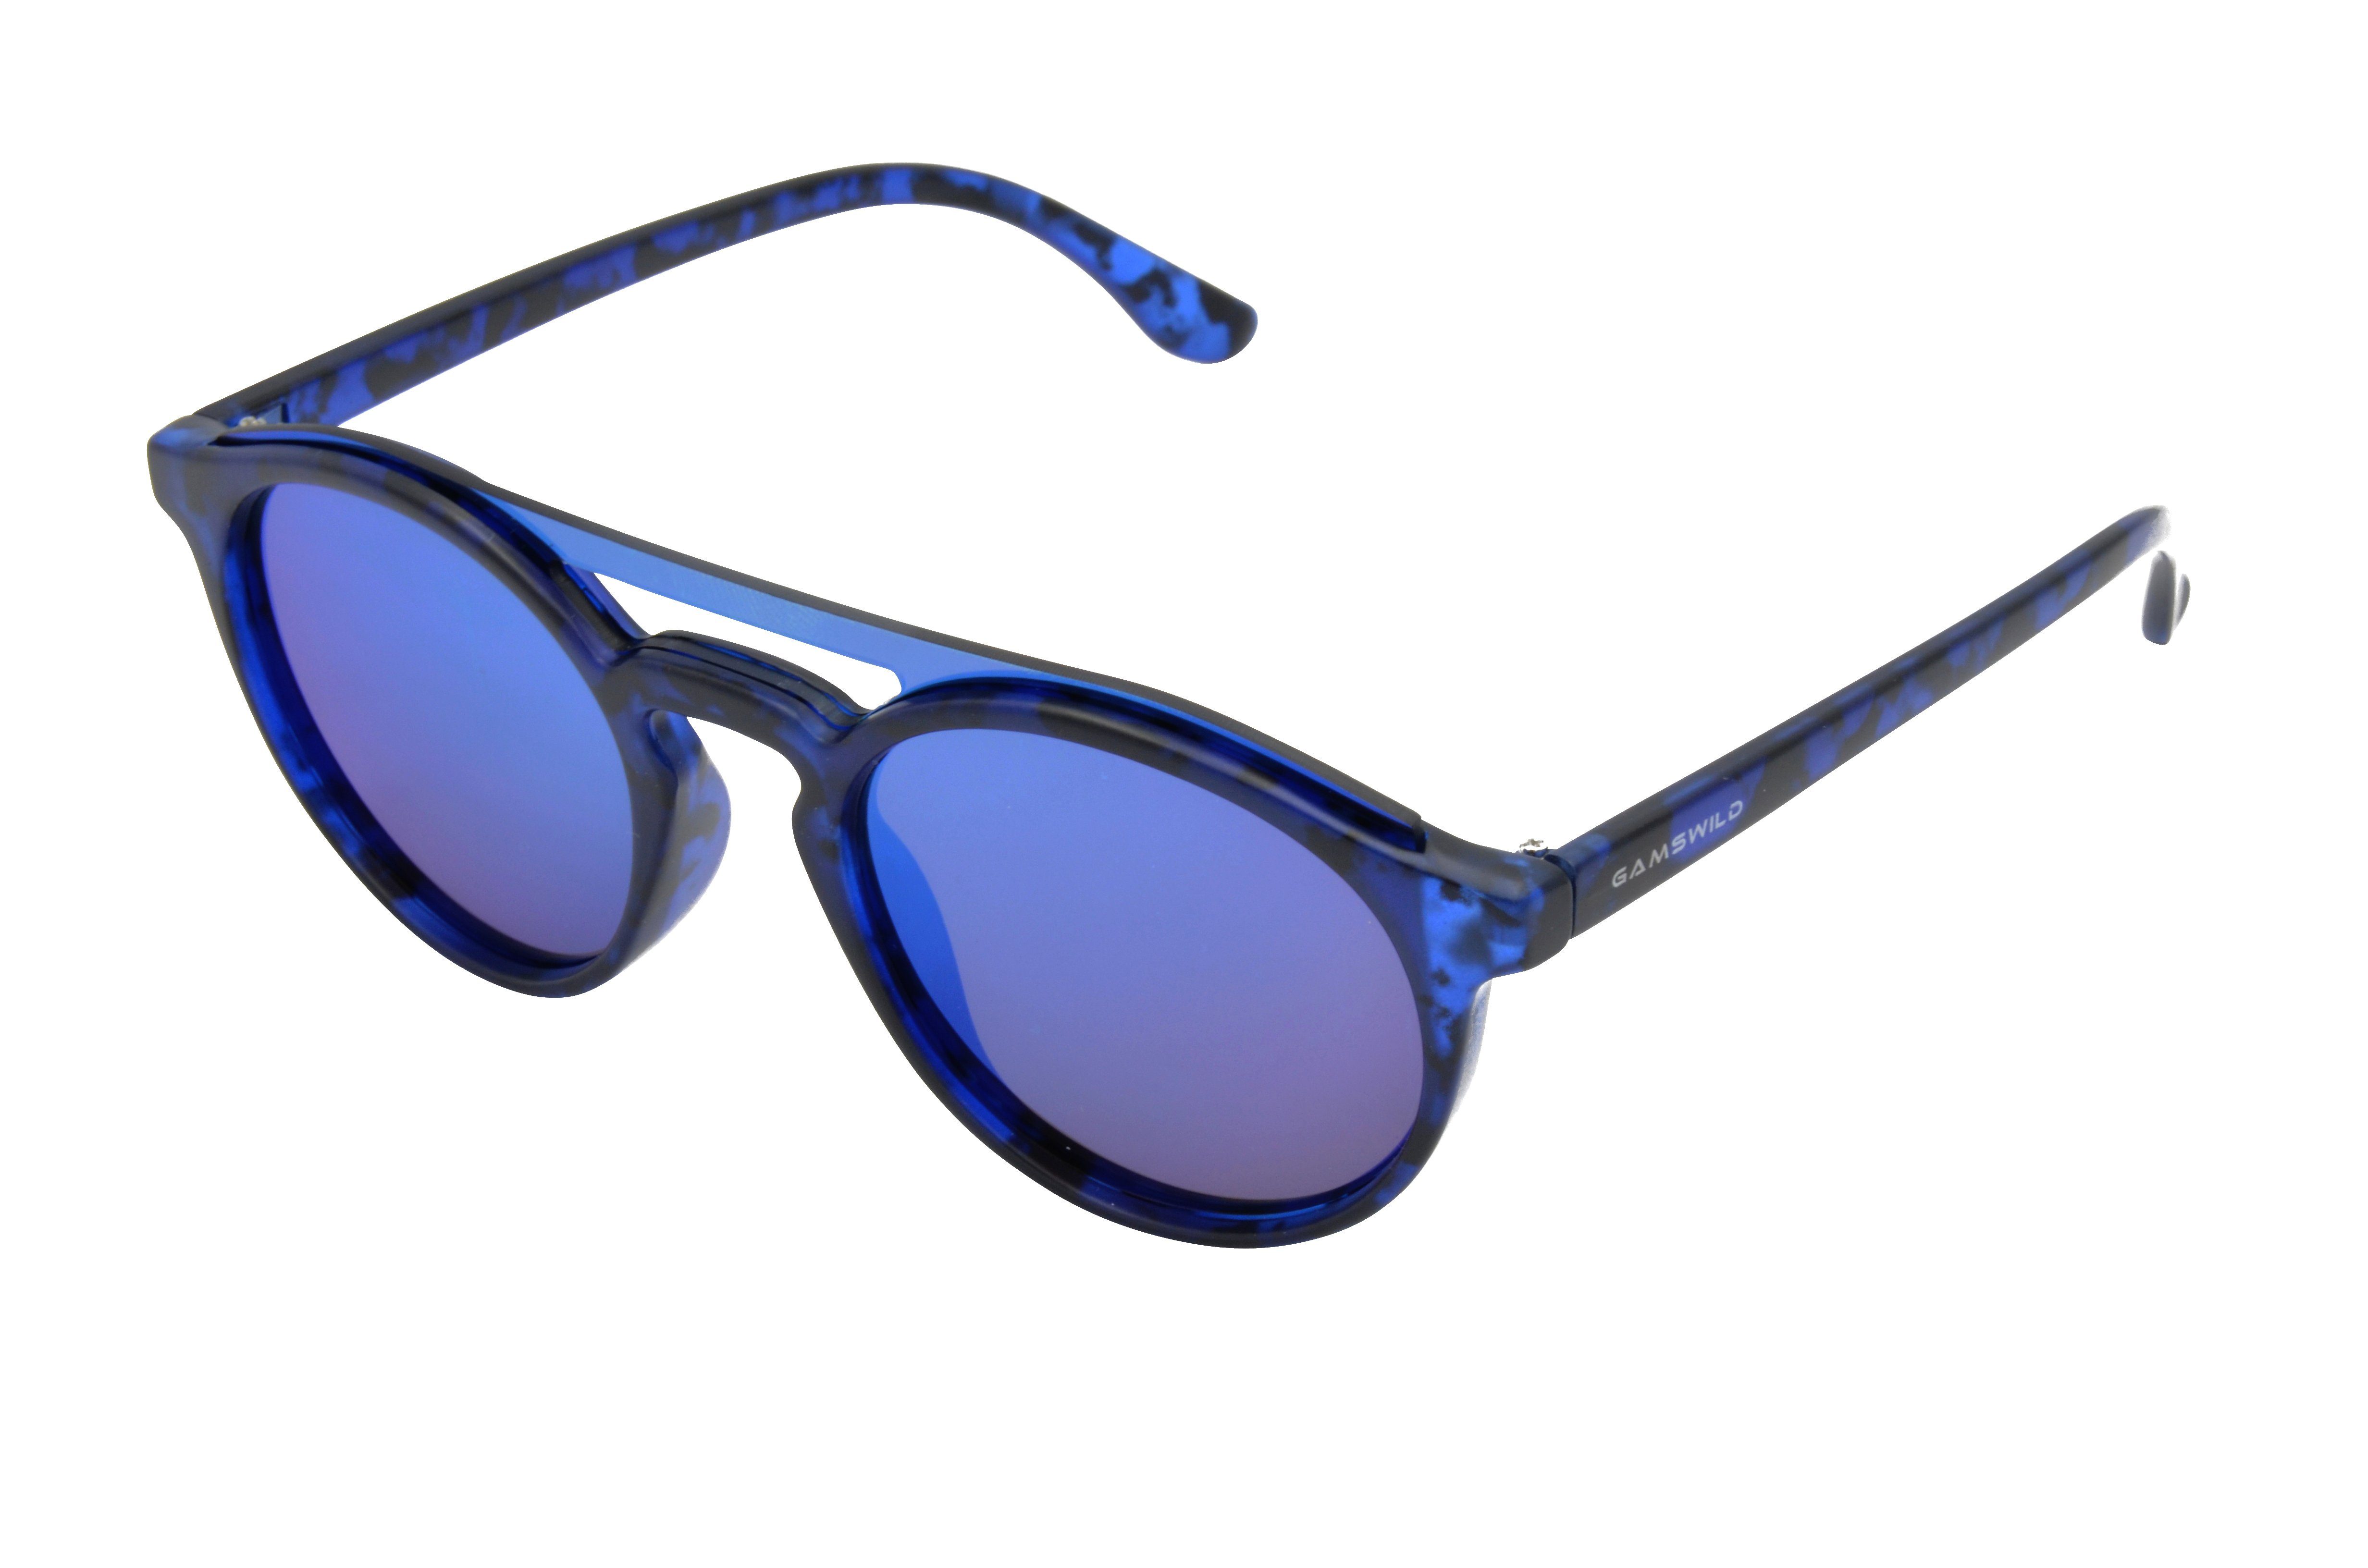 Mode Fashionbrille, grün, GAMSSTYLE Gamswild Sonnenbrille WM1221 blau, Damen braun Brille grün, Herren Unisex